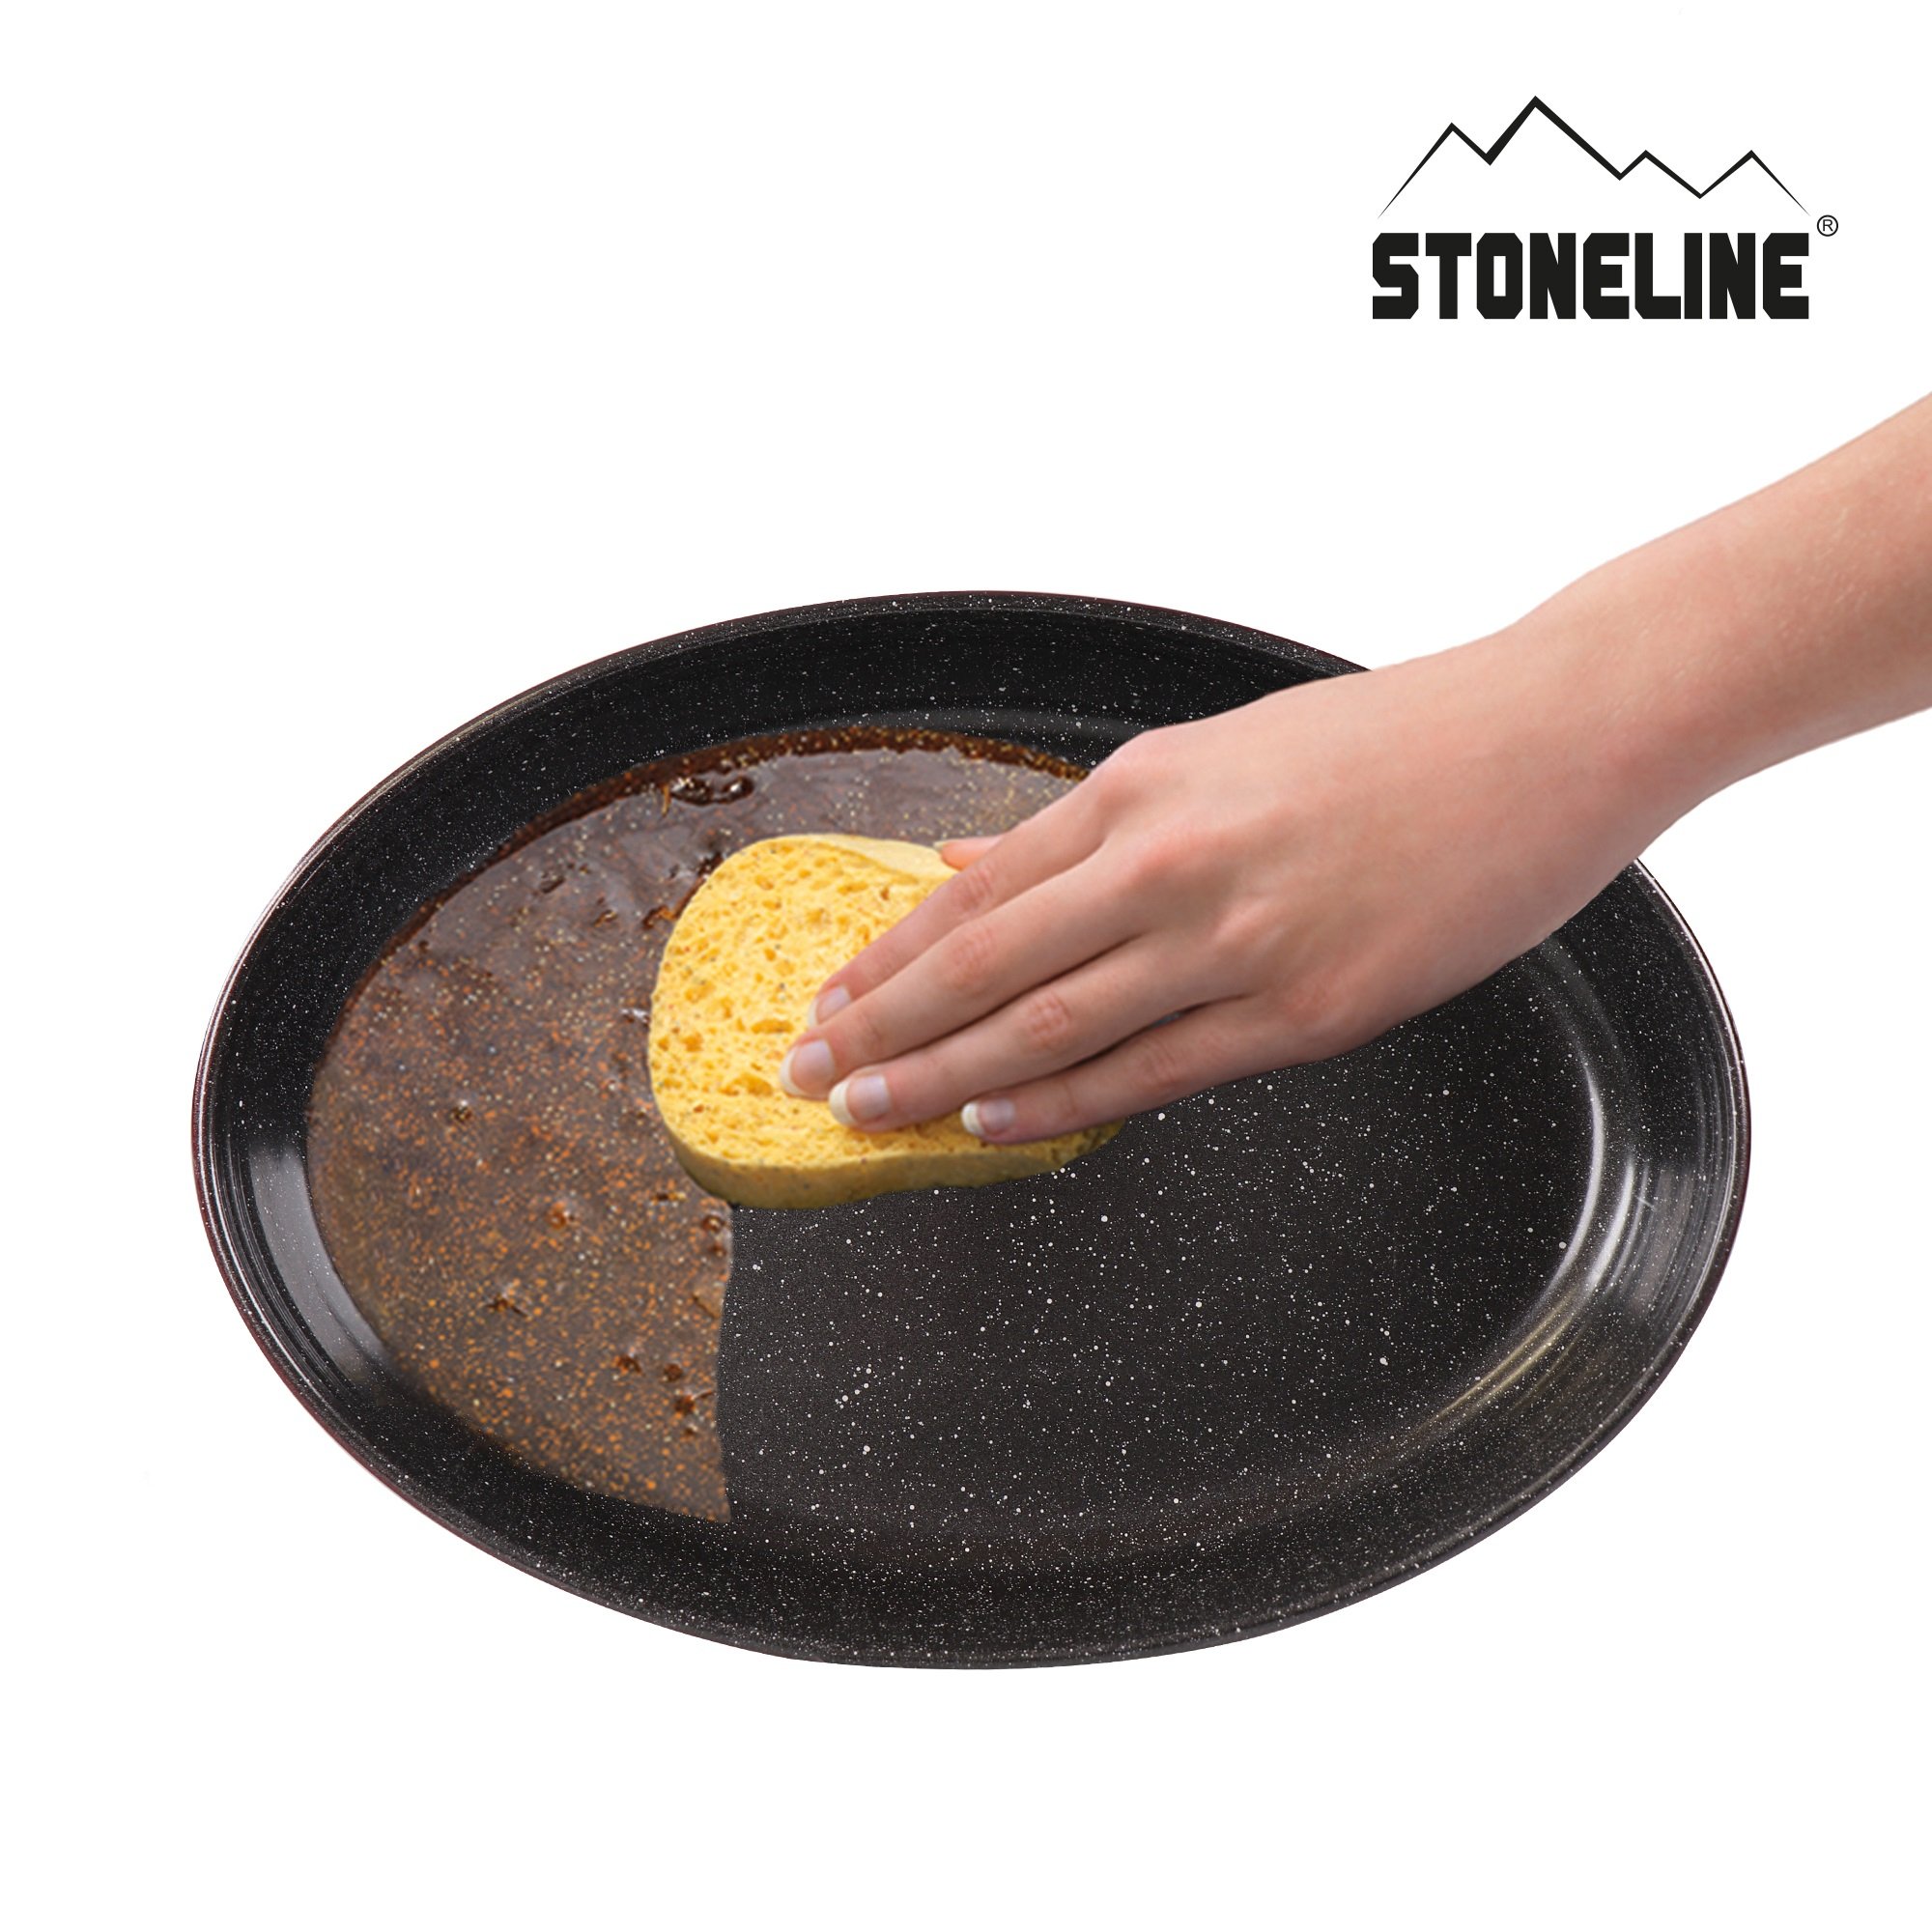 STONELINE® Oval Baking Dish 34x24 cm | Non-Stick Borosilicate Glass Oven Dish